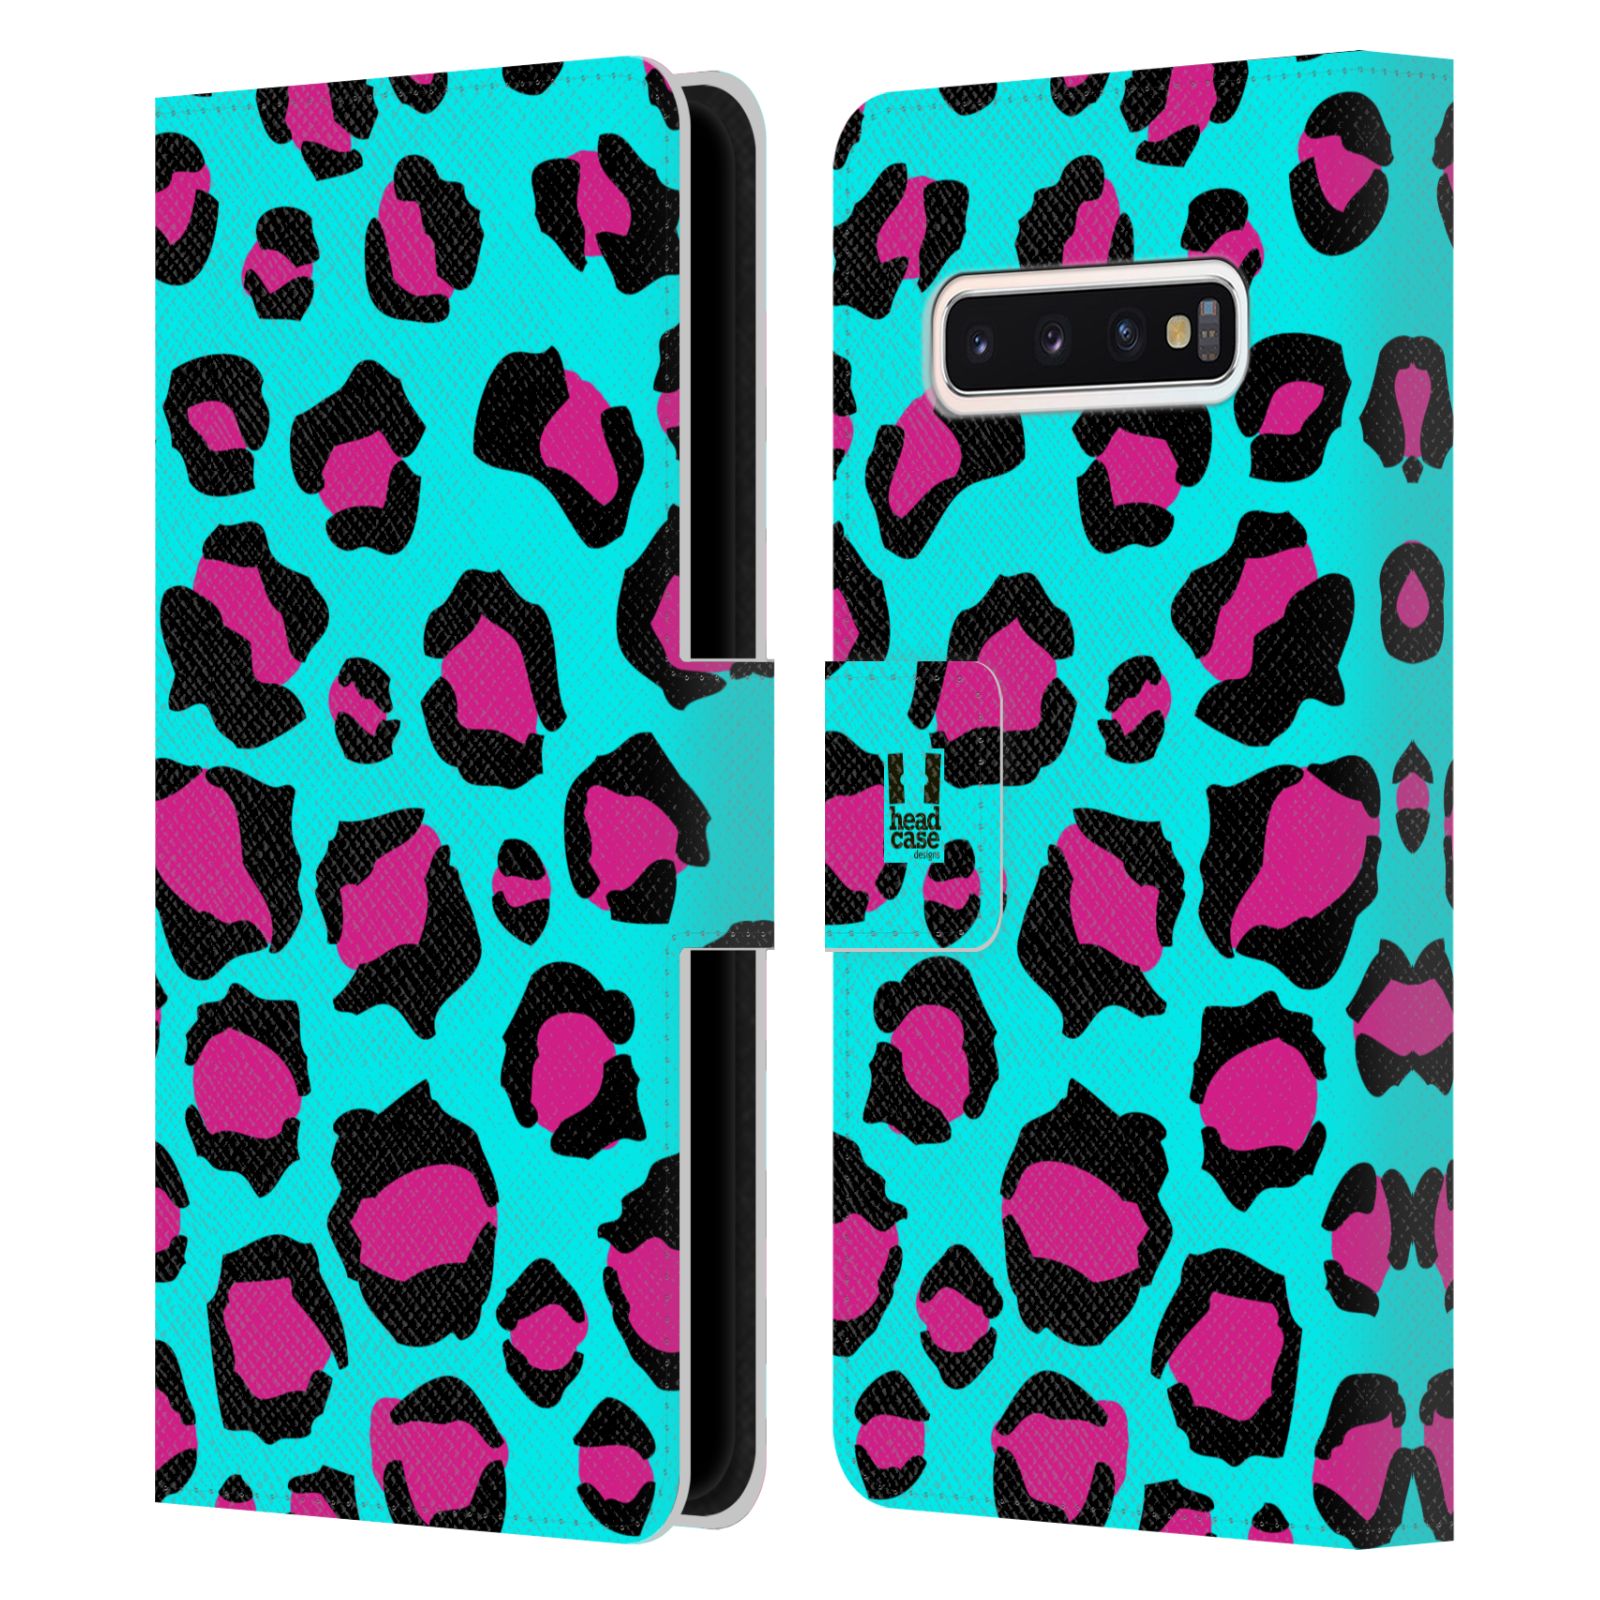 Pouzdro na mobil Samsung Galaxy S10 - HEAD CASE - Magický vzor leopard